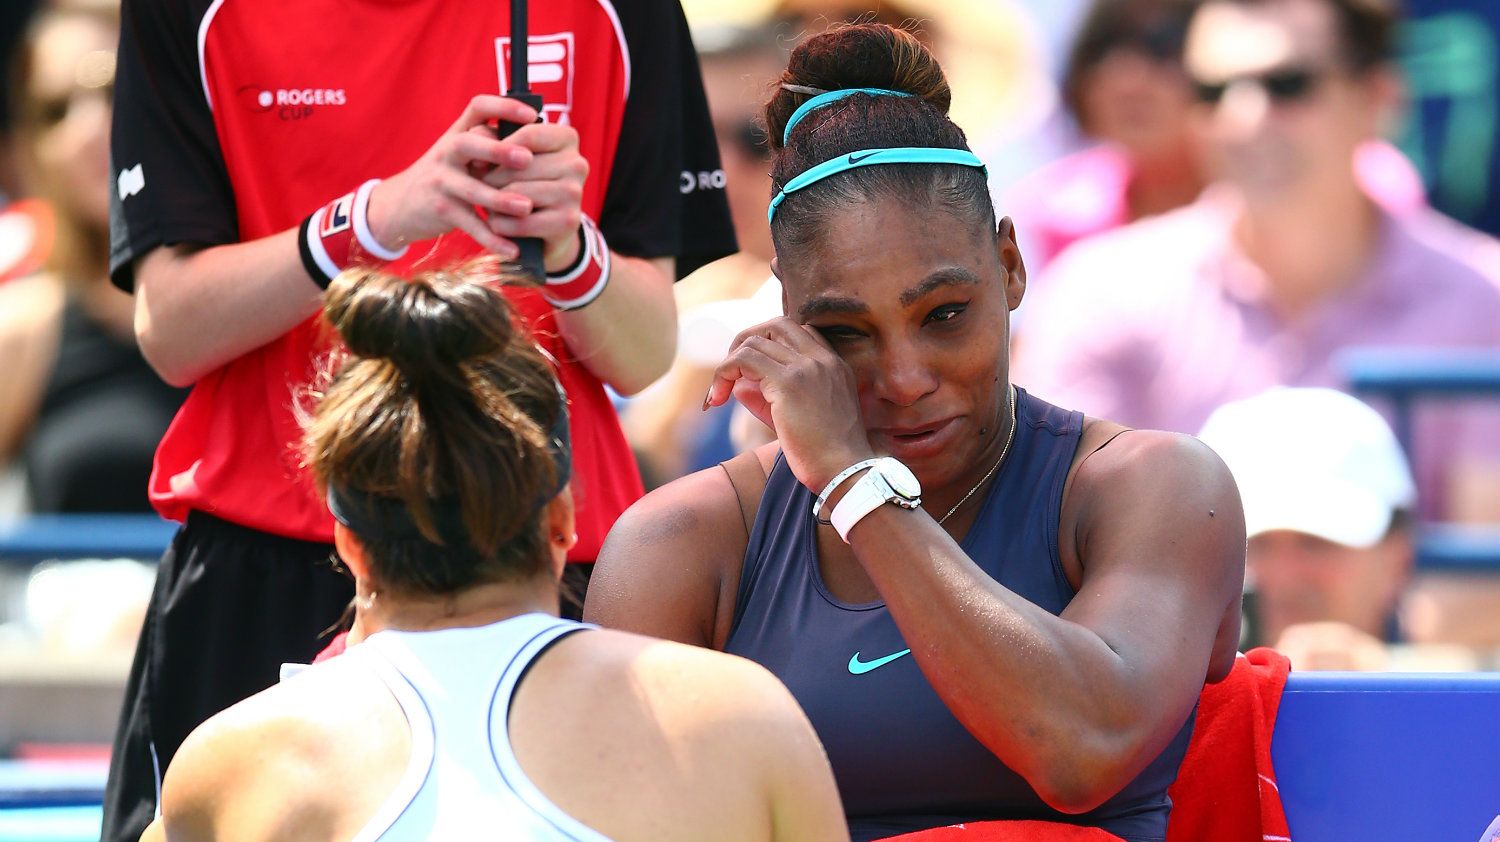 “Egy igazi vadállat vagy” – vigasztalta a síró Serena Williamst a győztes